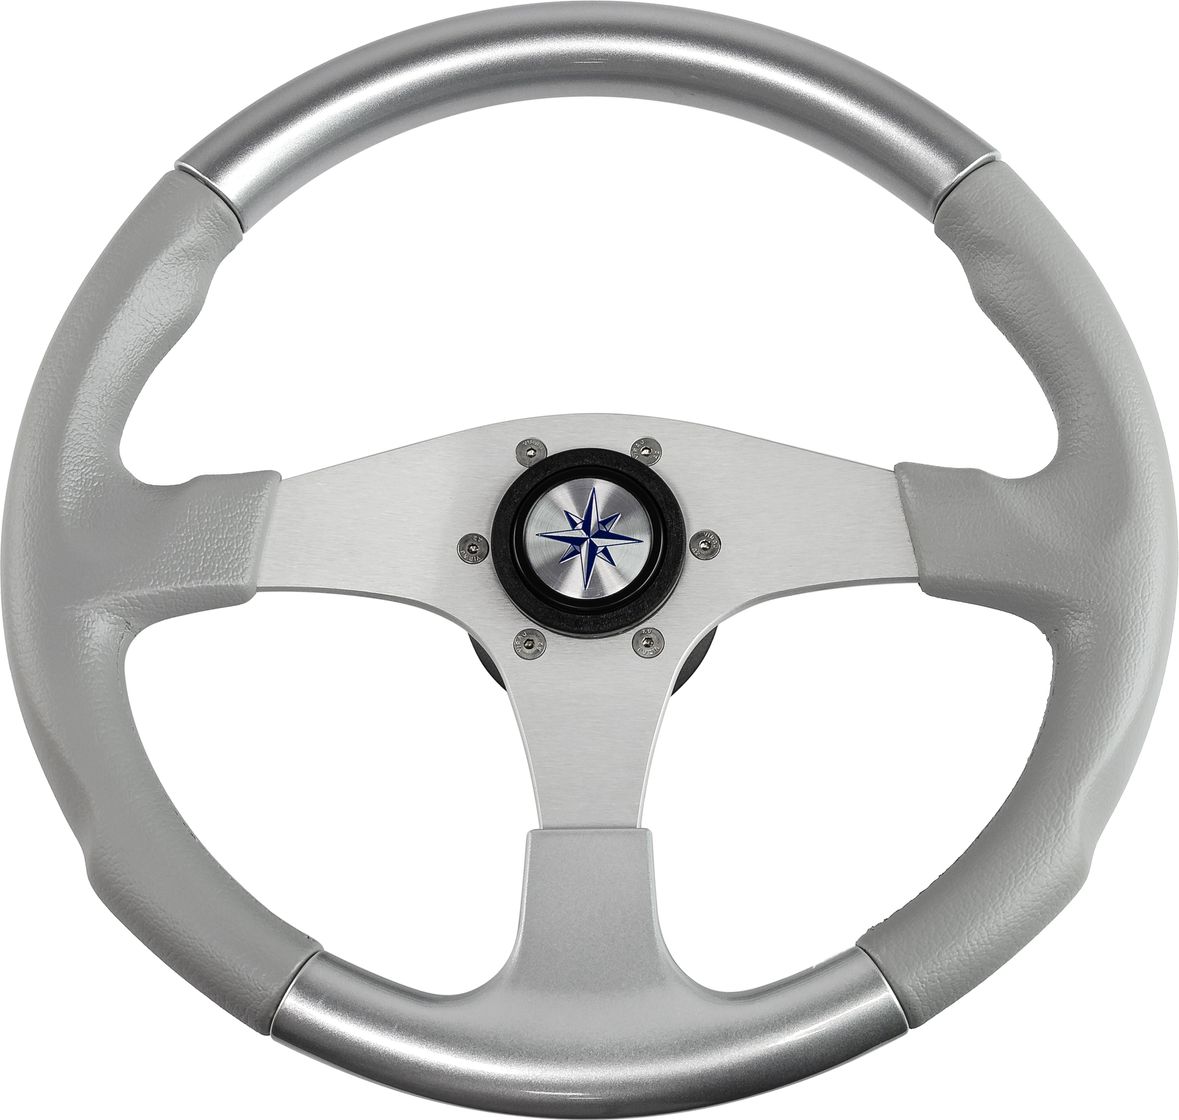 Рулевое колесо EVO MARINE 2 обод серосеребряный, спицы серебряные д. 355 мм VN850003-93